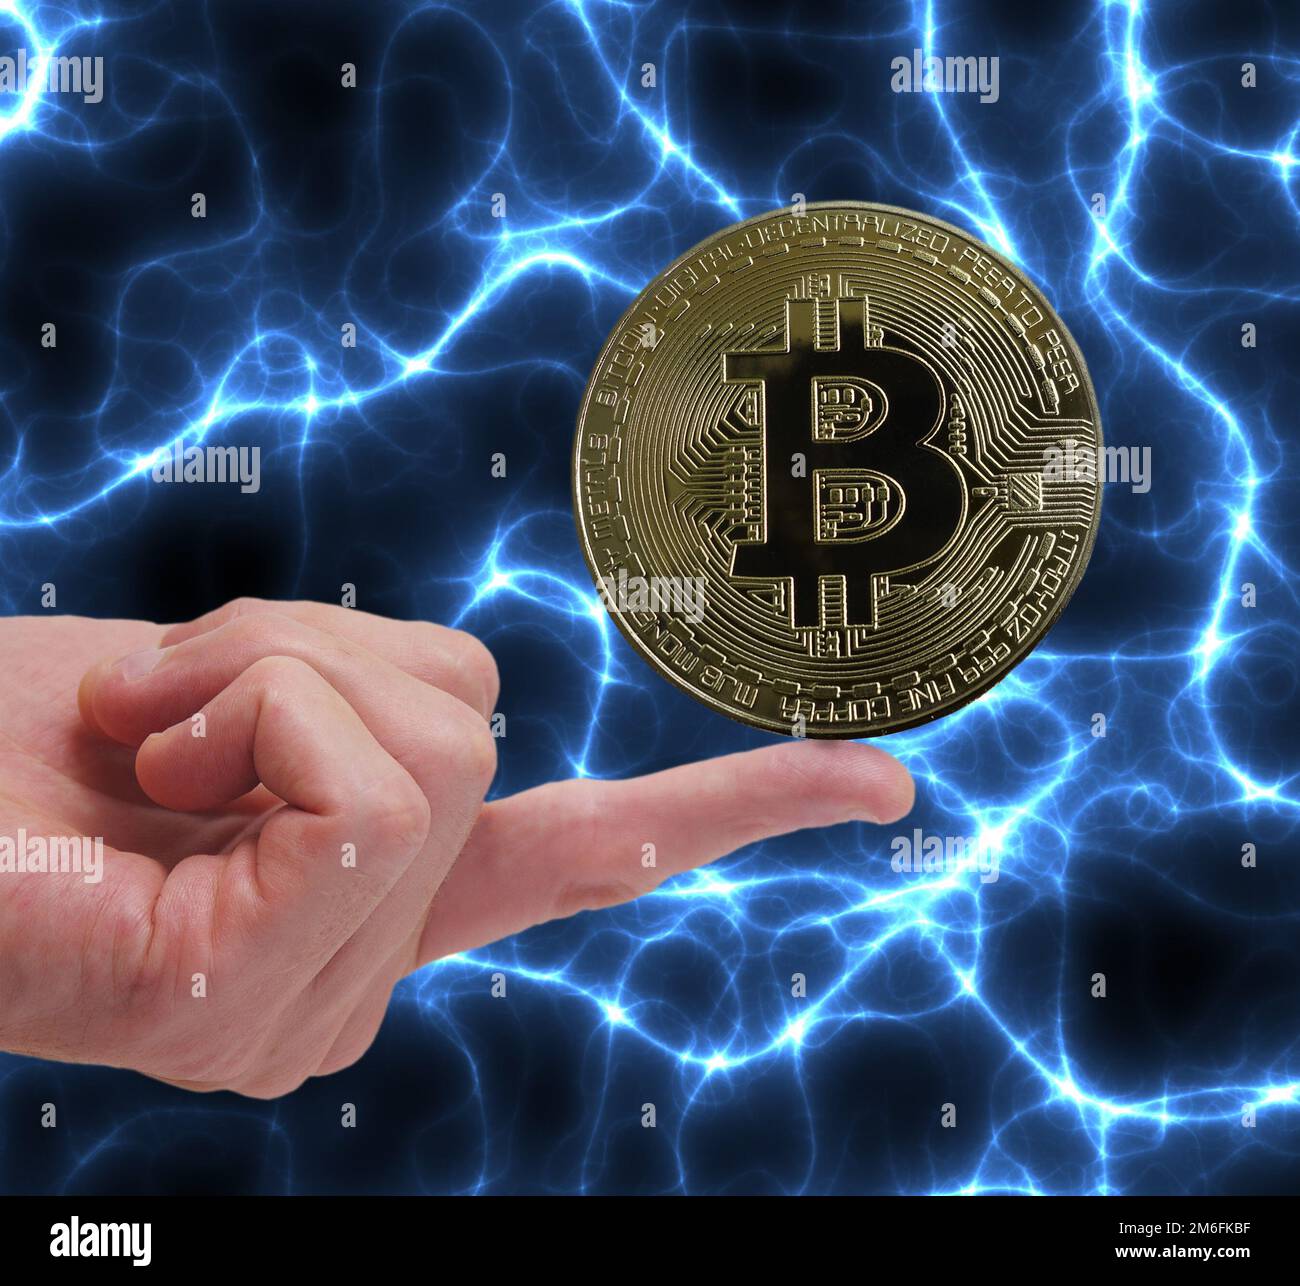 Bitcoin crypto-monnaie d'équilibrage de pièce sur un doigt avec fond bleu d'électricité Banque D'Images